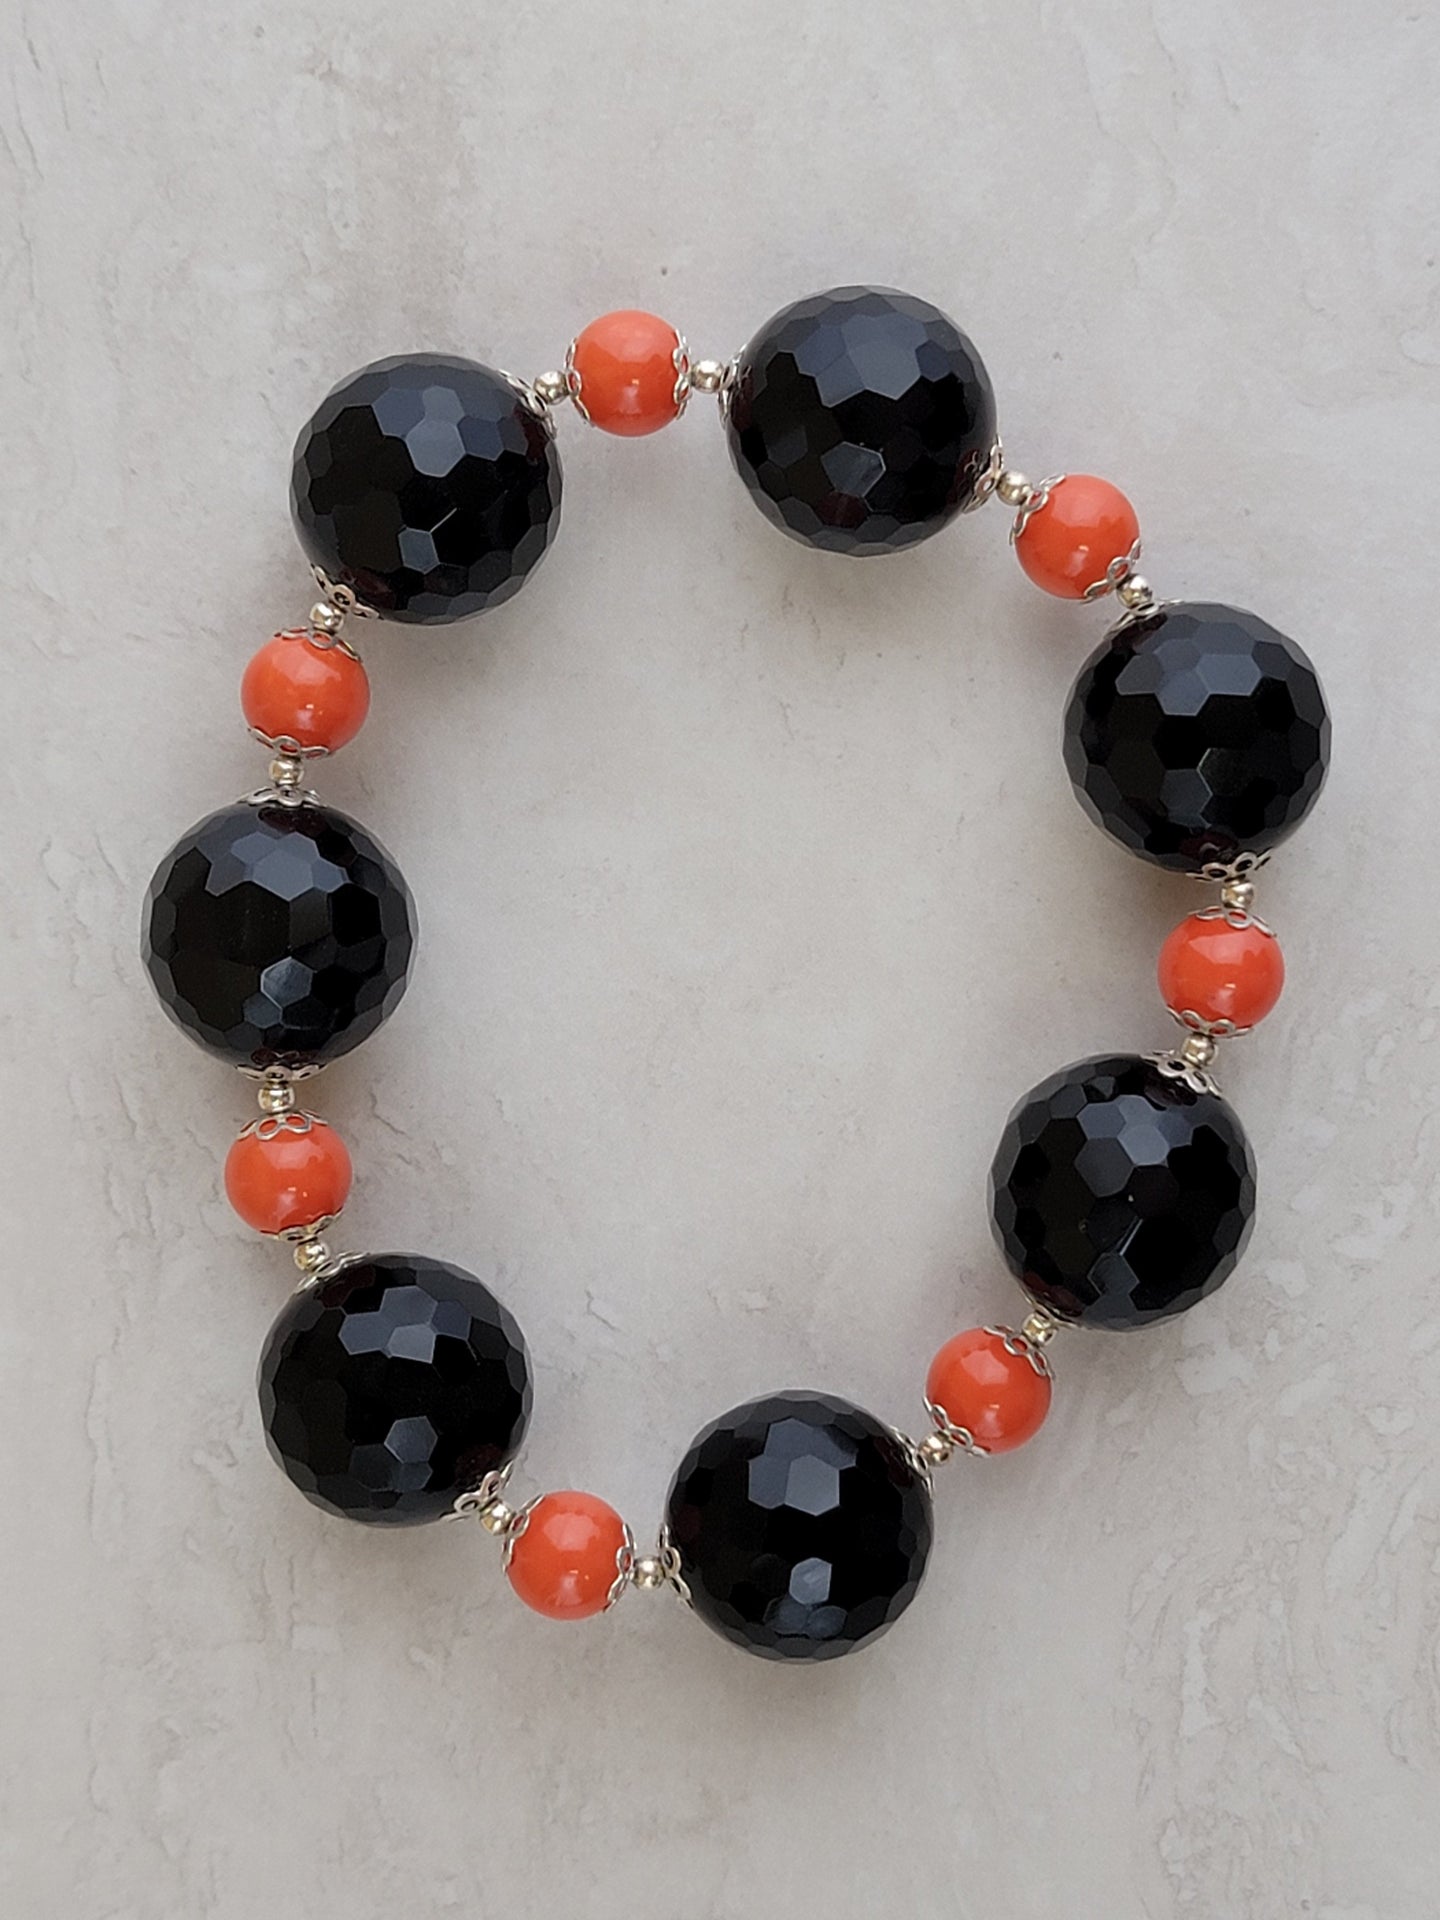 Black & Orange Crystal Round Bracelet - One of a kind